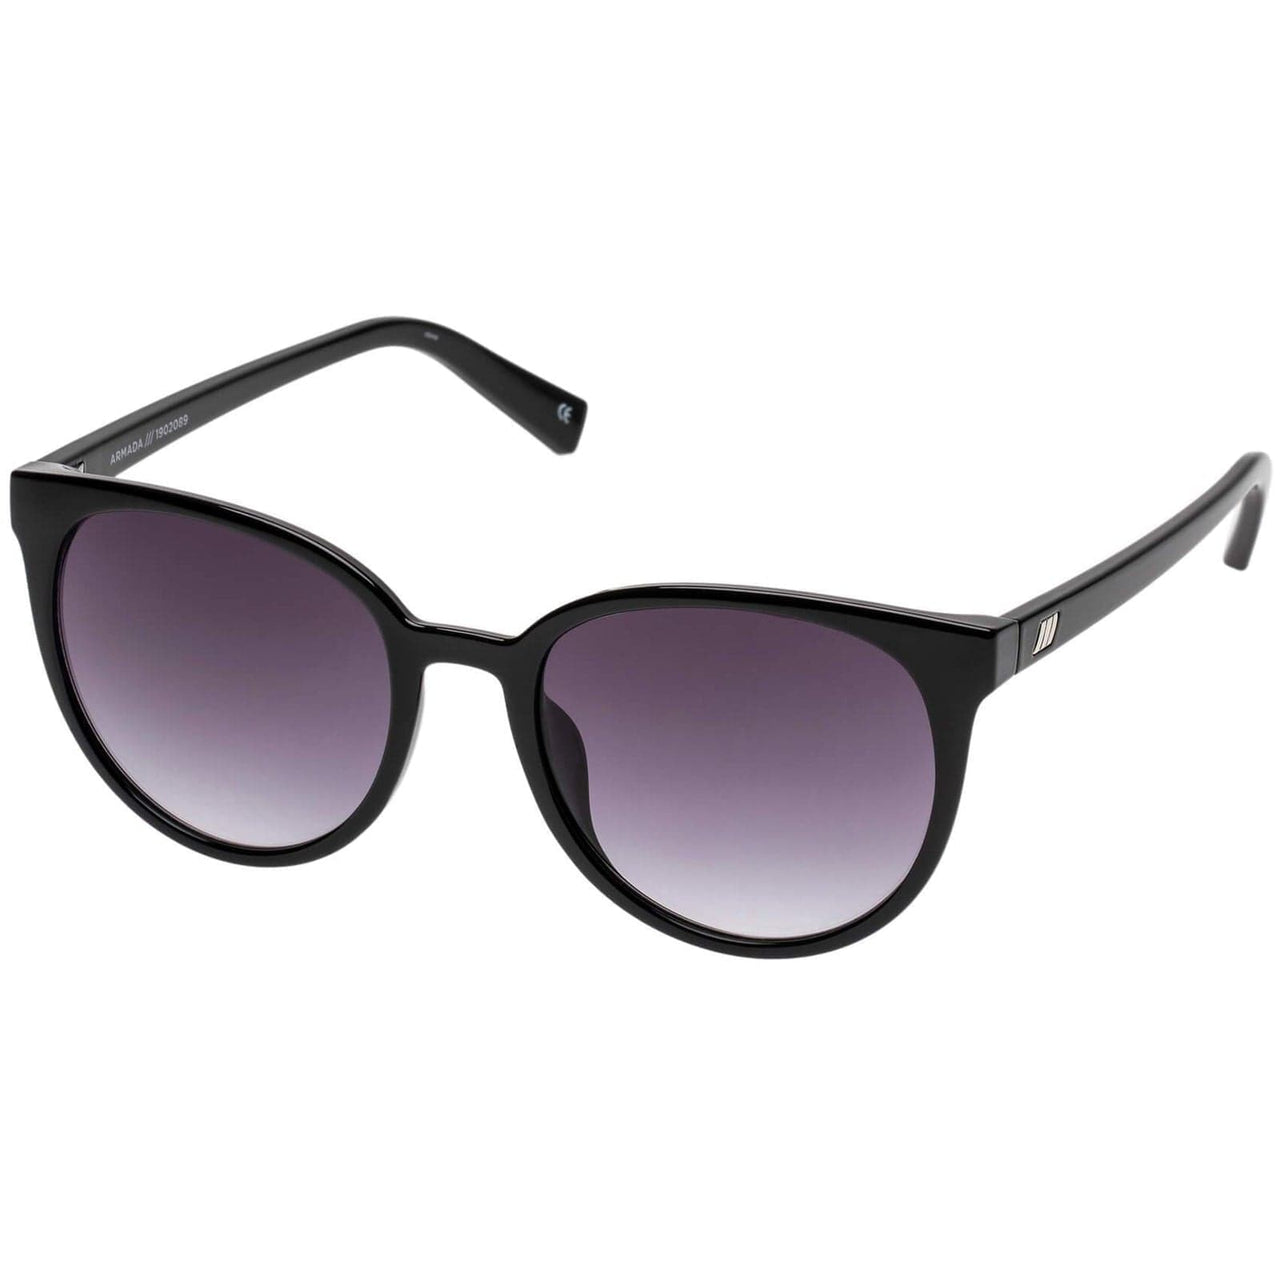 Armada Sunglasses Black, Sunglasses by Le Spec | LIT Boutique